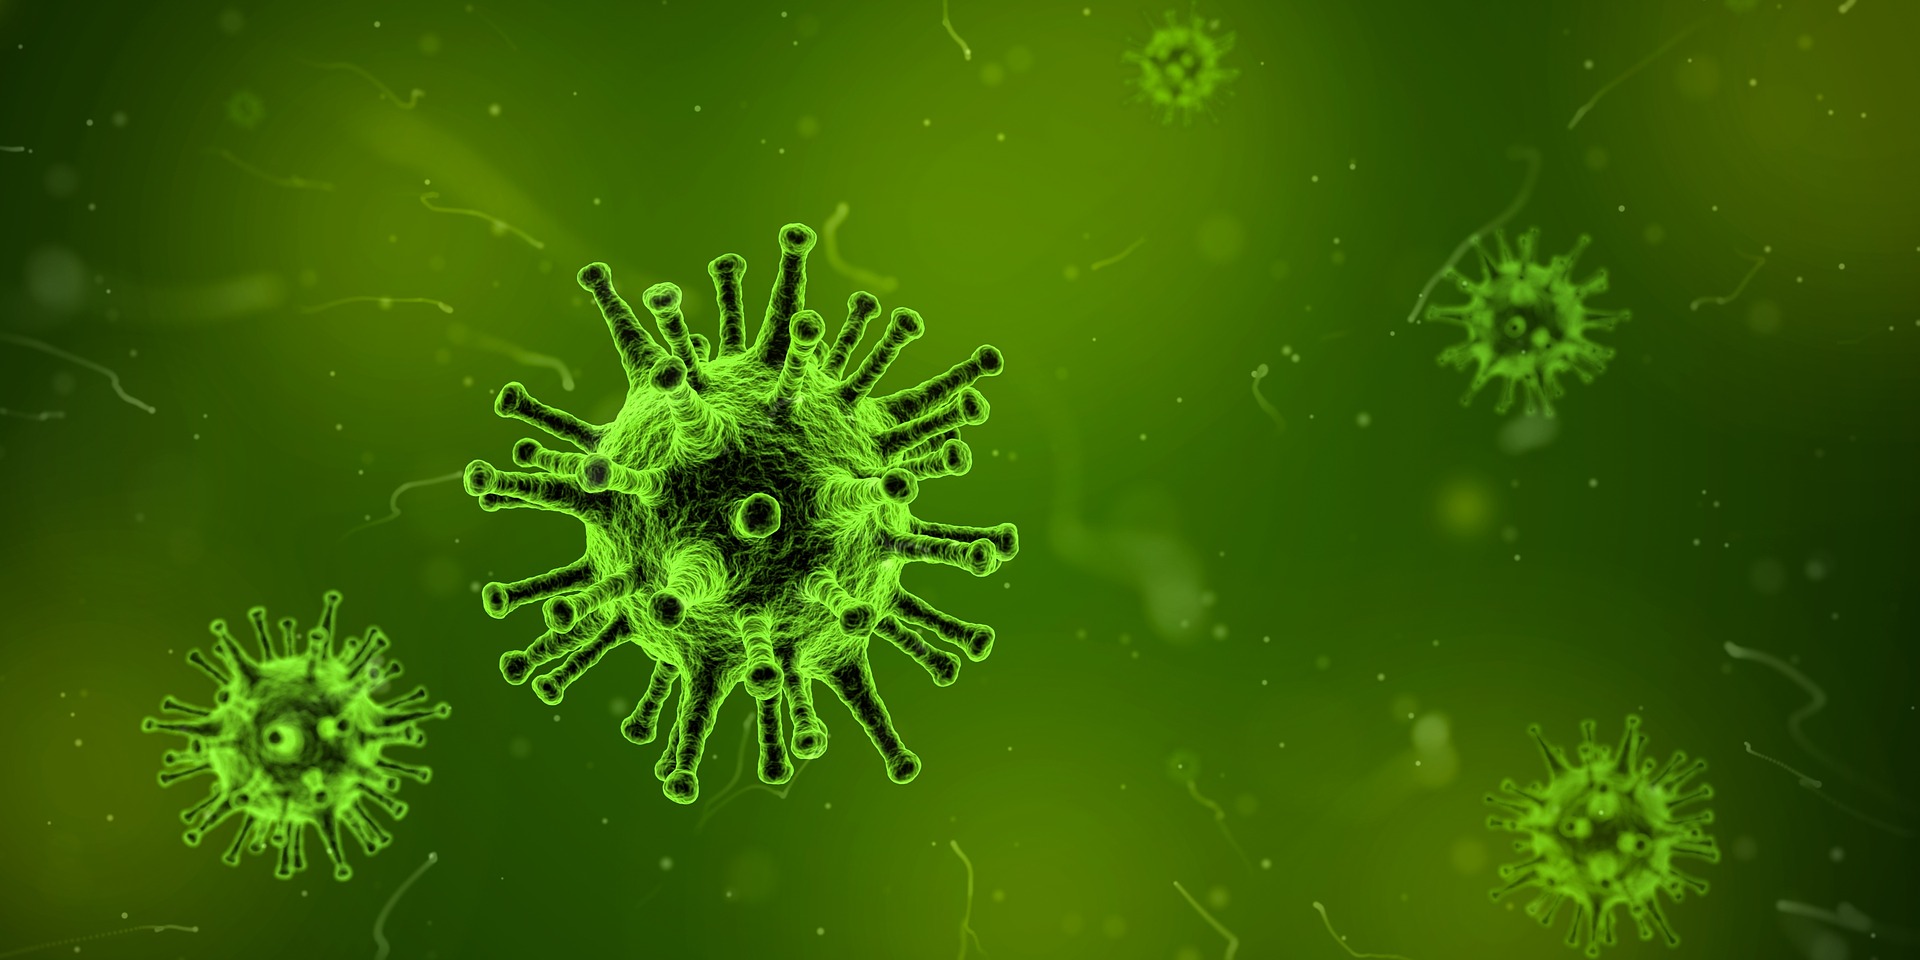 file/ELEMENTO_NEWSLETTER/20121/Influenza_virus.jpg